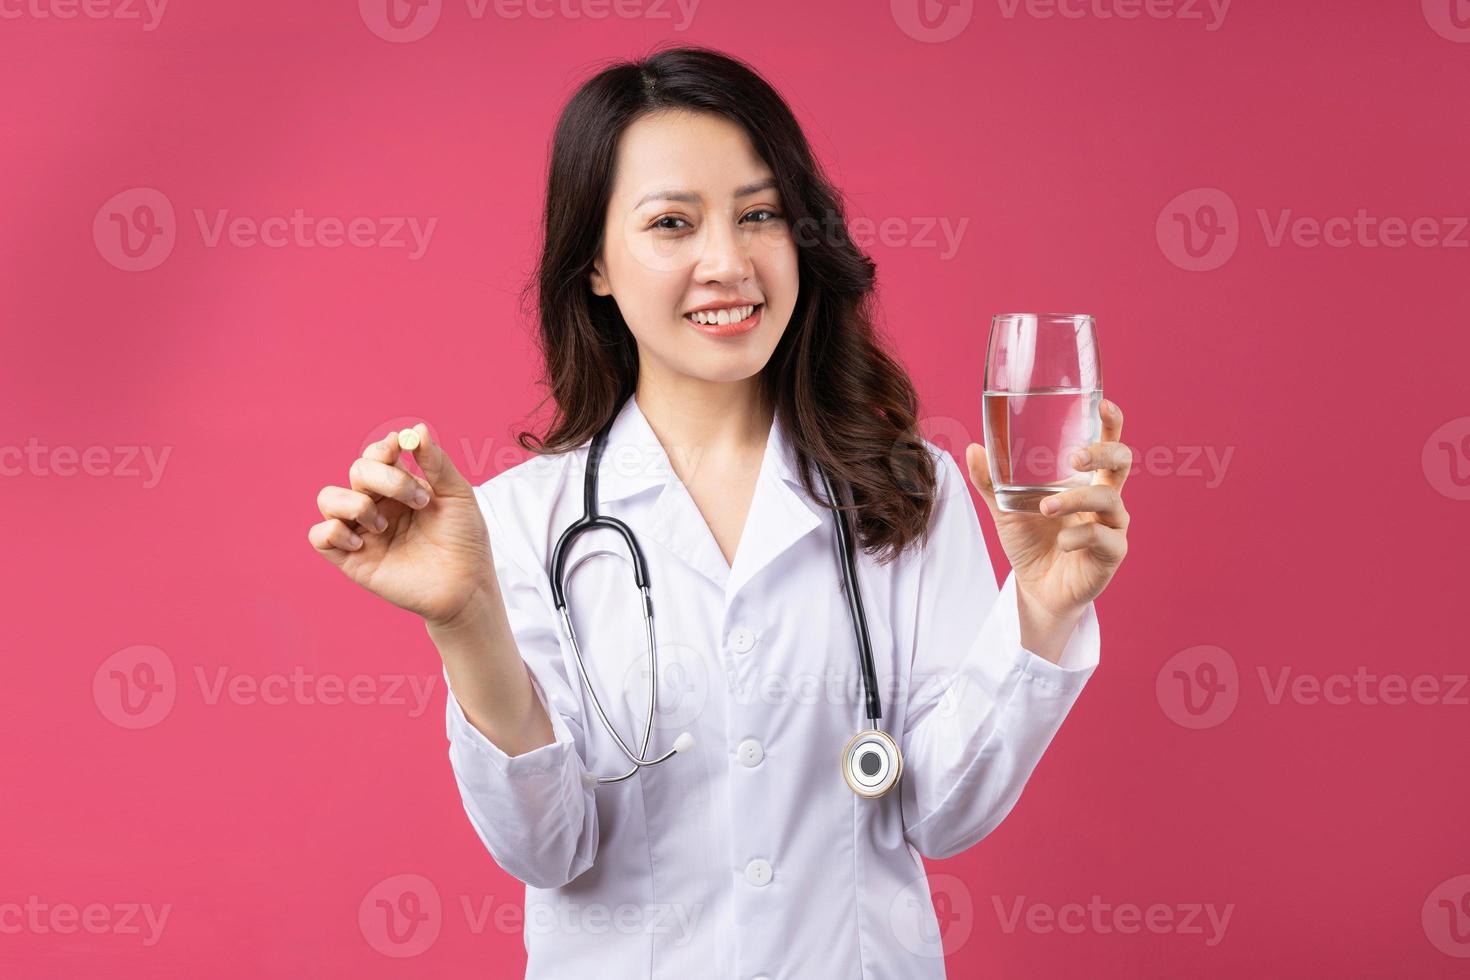 jovem médica asiática com expressão alegre no fundo foto